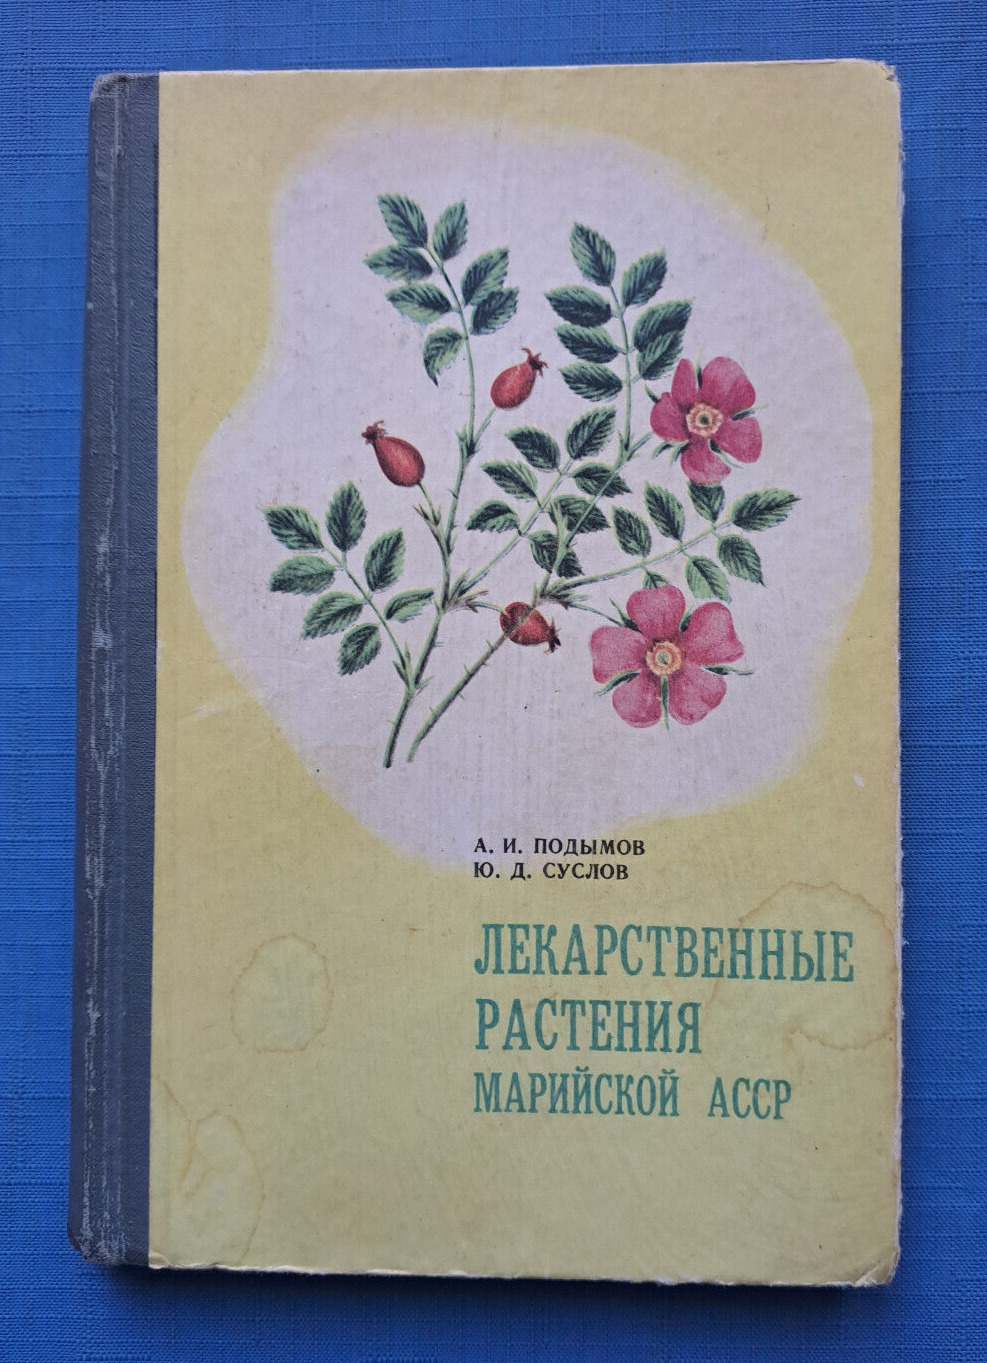 1974 Medicinal plants of Mari ASSR Herbal Treatment Medication Russian book